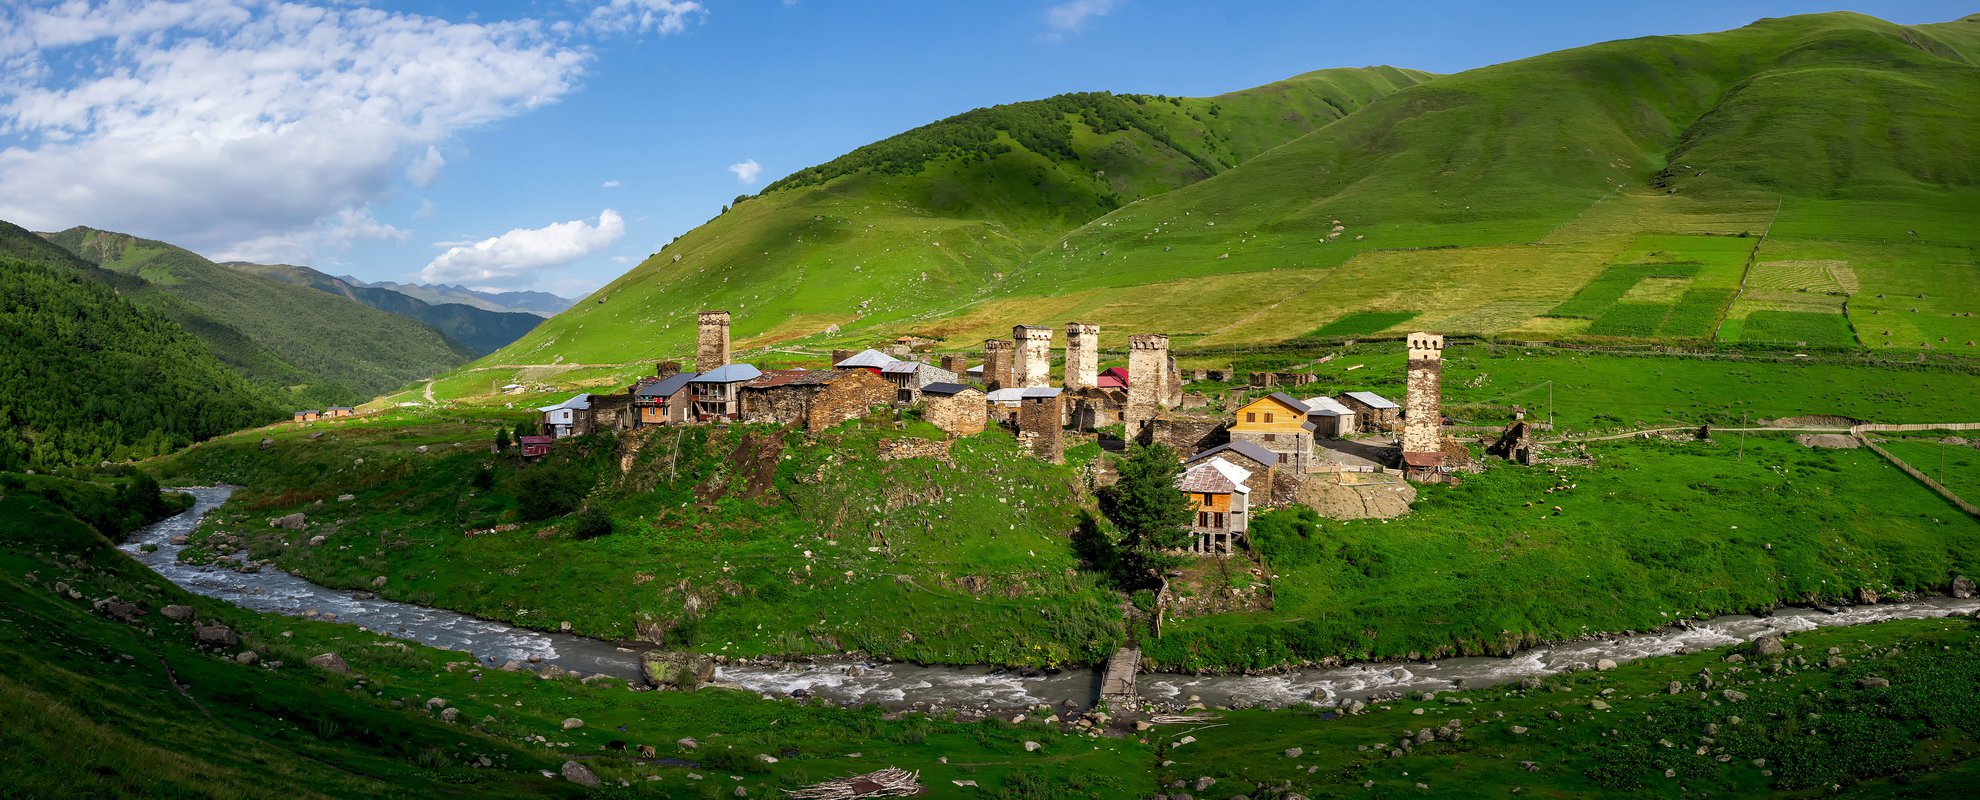 Du besöker den bedårande byn Ushguli under resan i Georgien